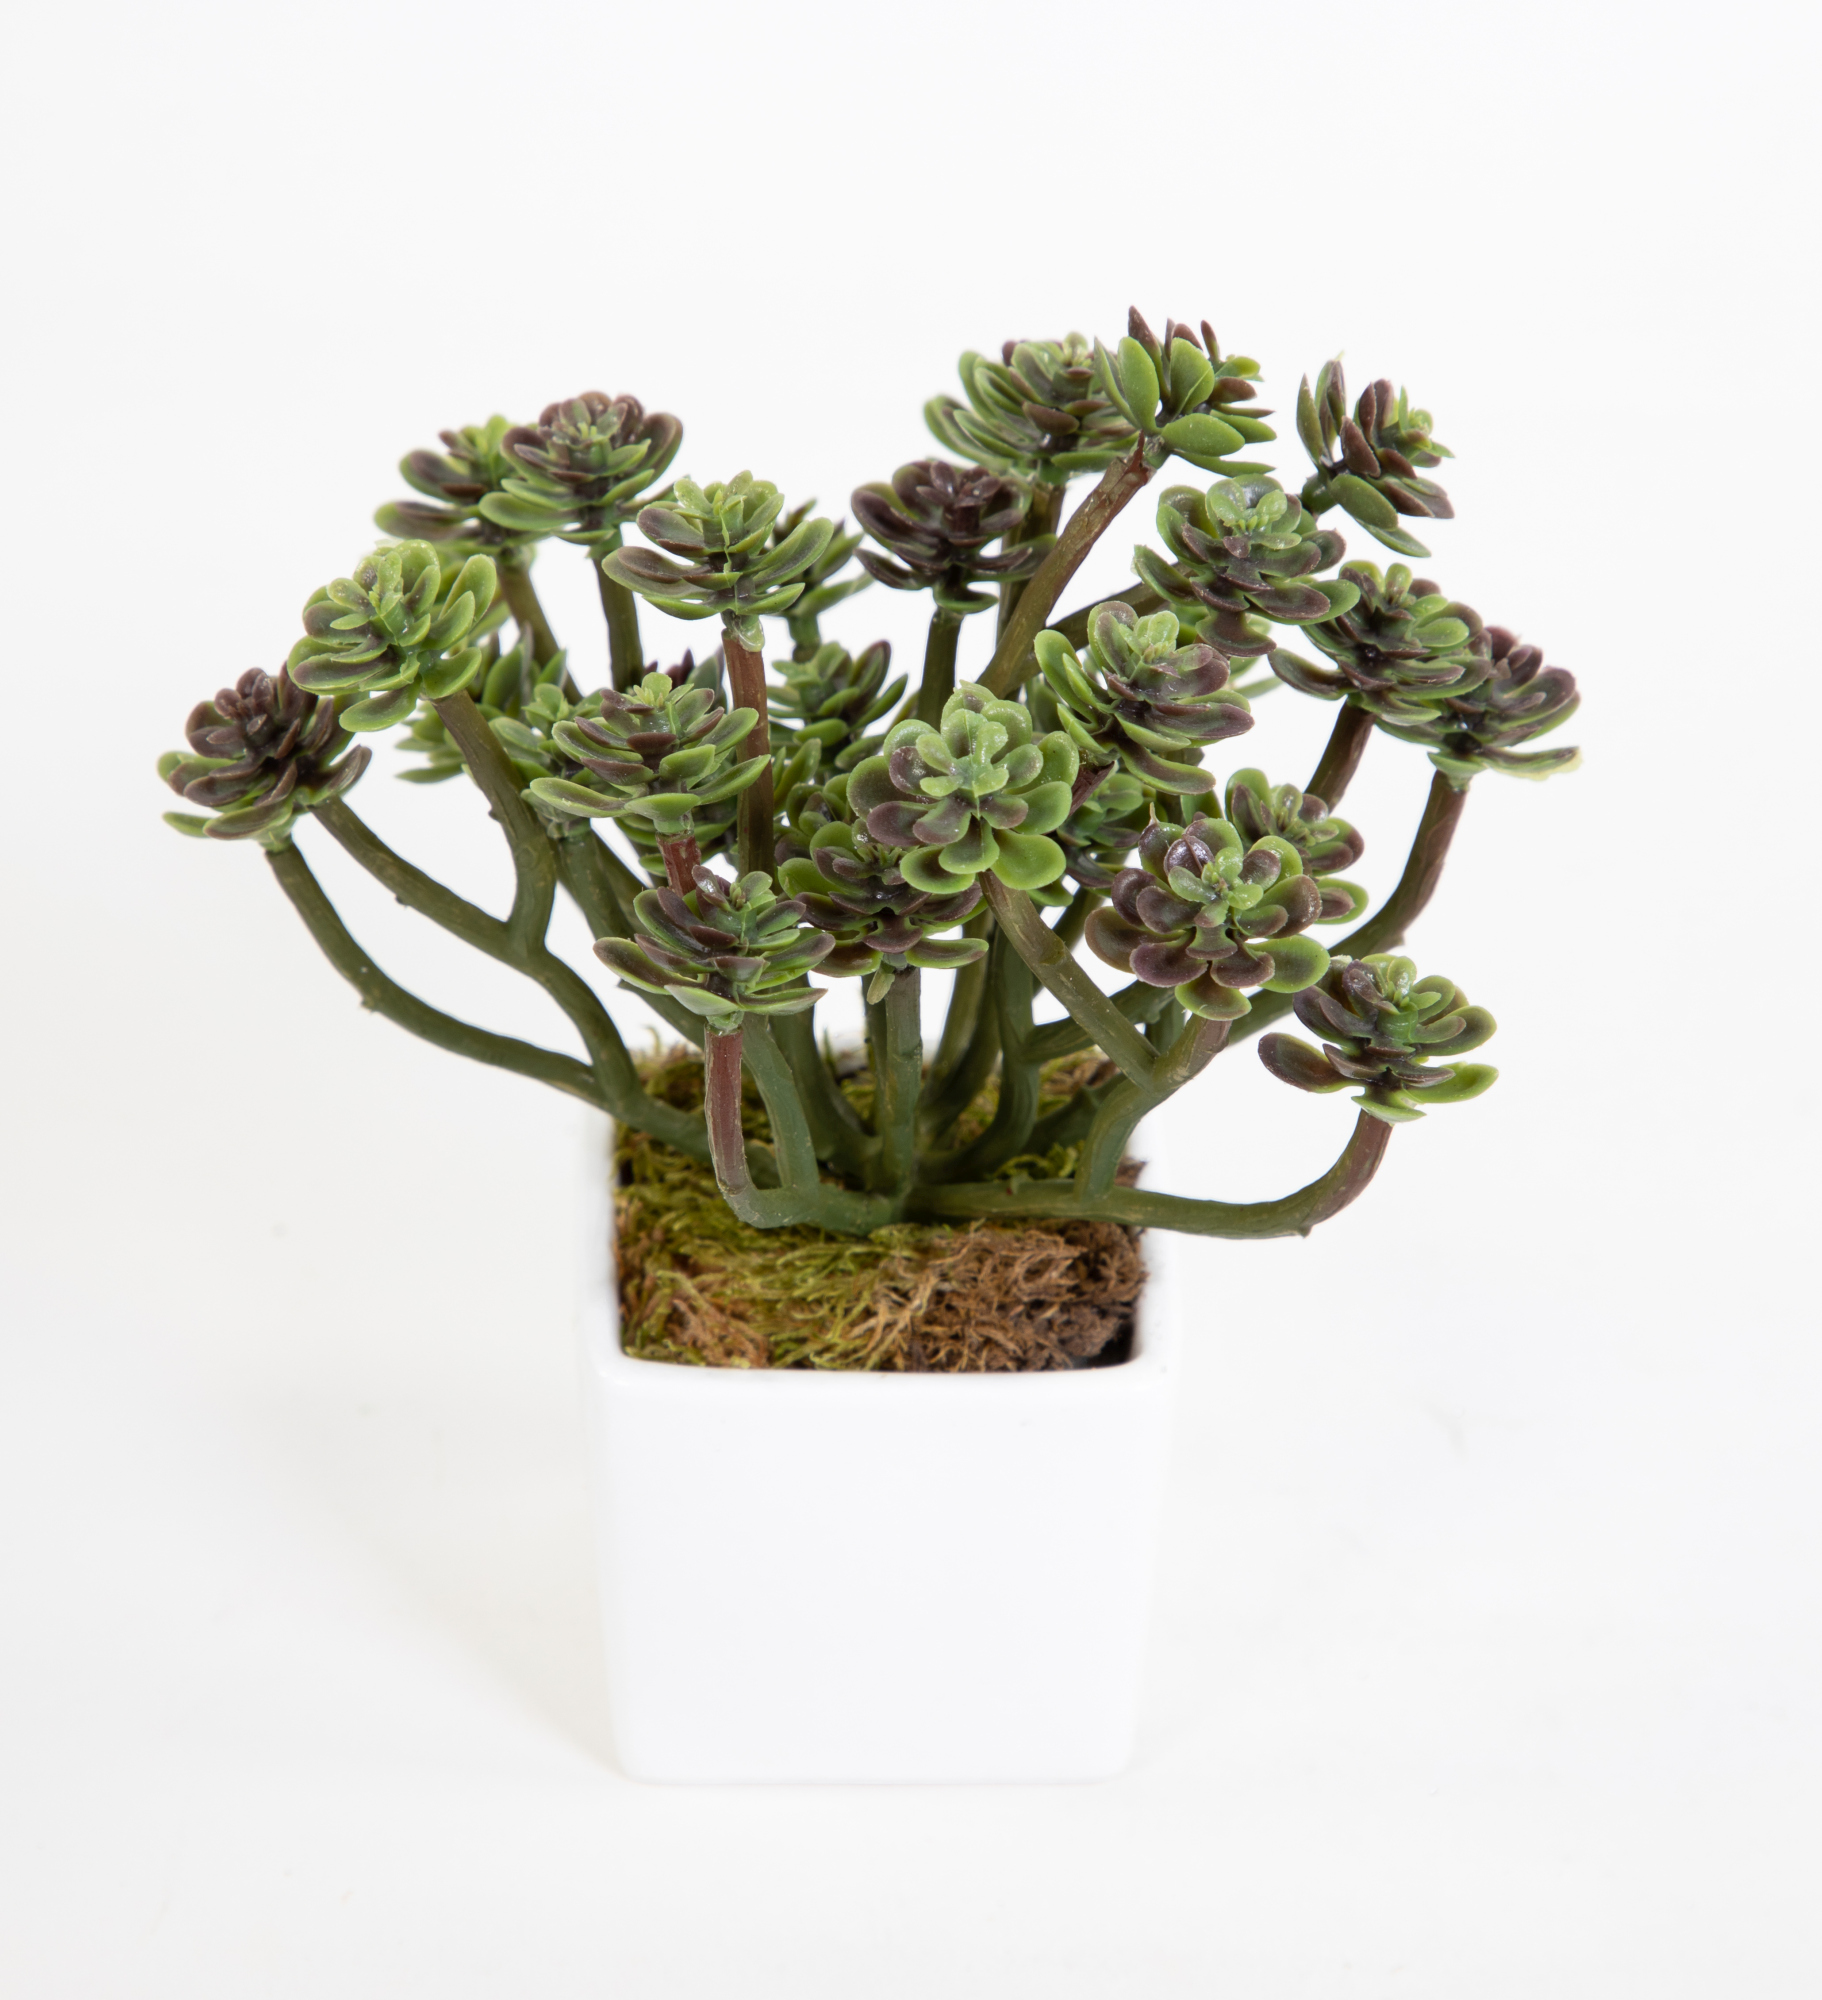 Sukkulente Sempervivum - Hauswurz im weißen Keramiktopf 16cm FI Kunstpflanzen künstliche Pflanzen